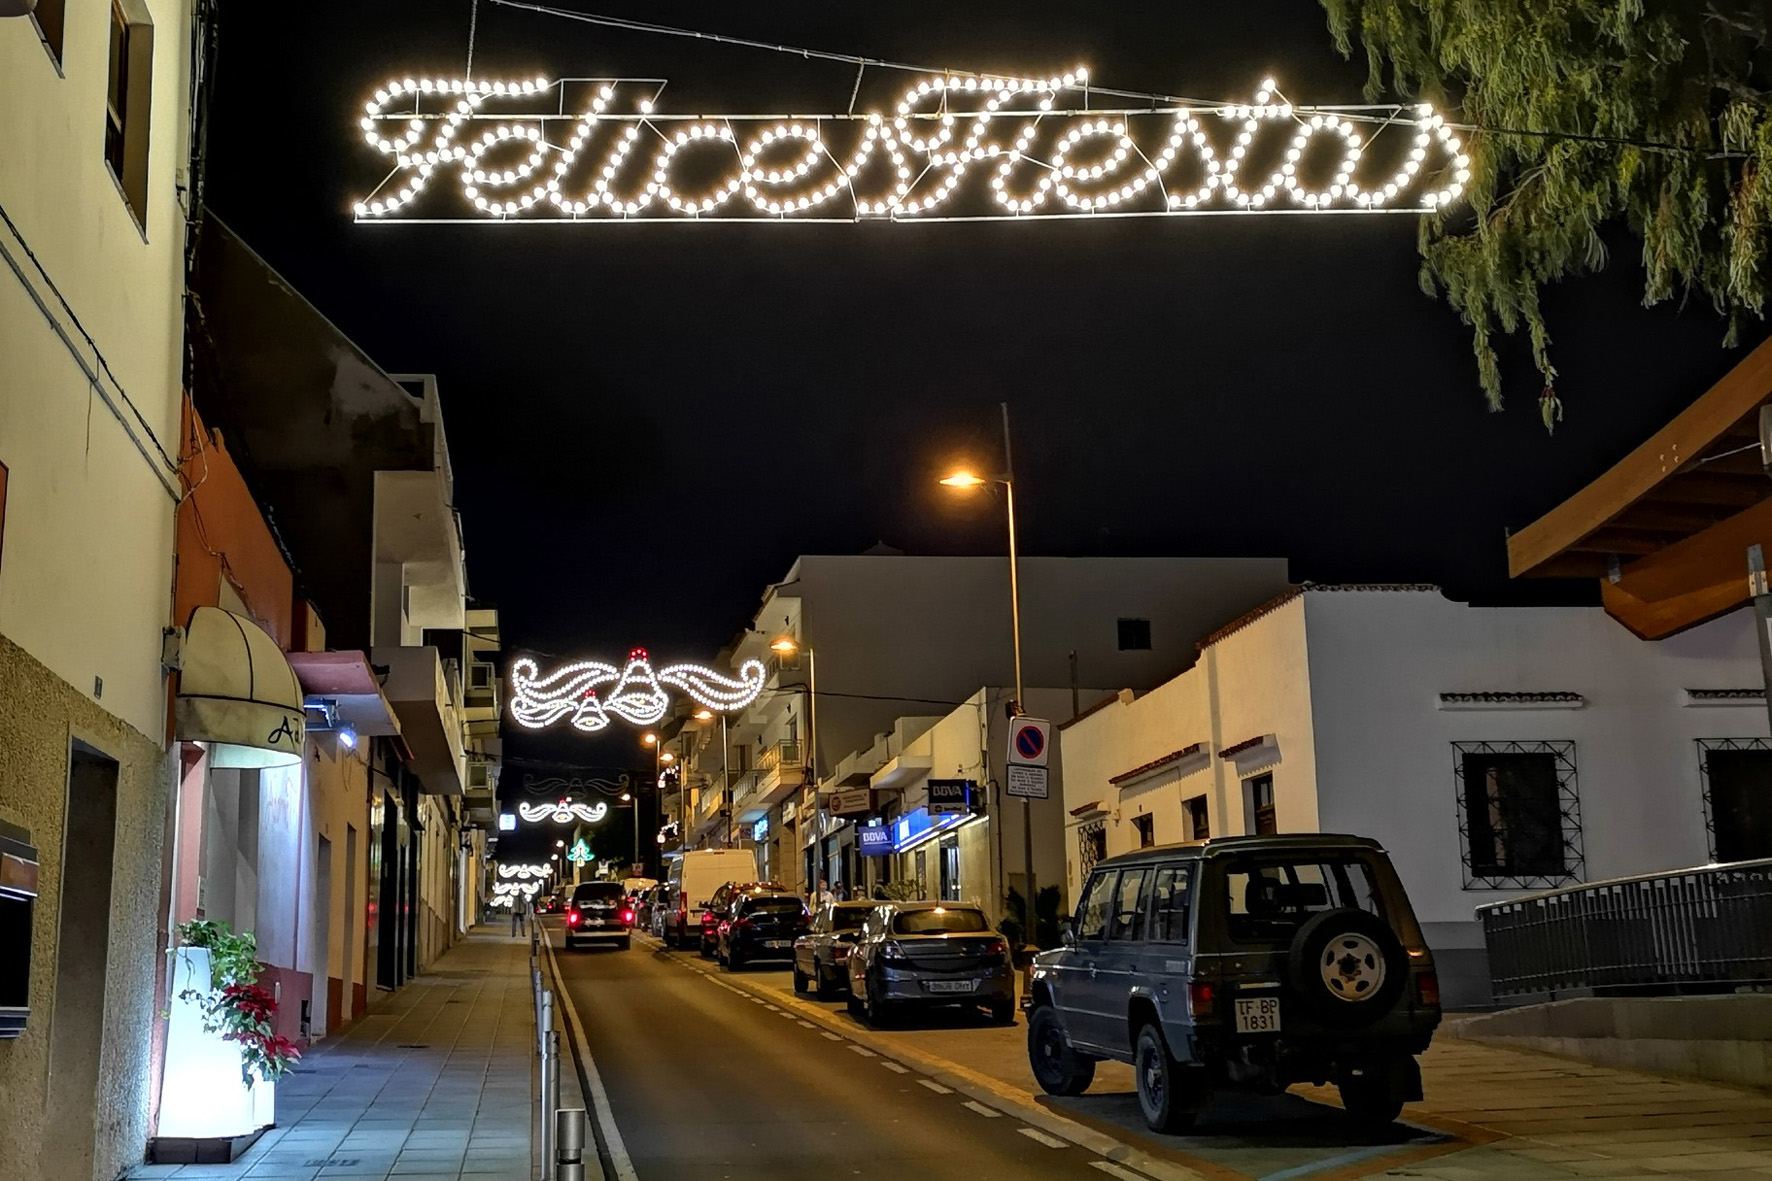 La Frontera celebra este sábado “la Noche de las Estrellas” un programa lúdico y de dinamización comercial y el encendido de luces navideñas